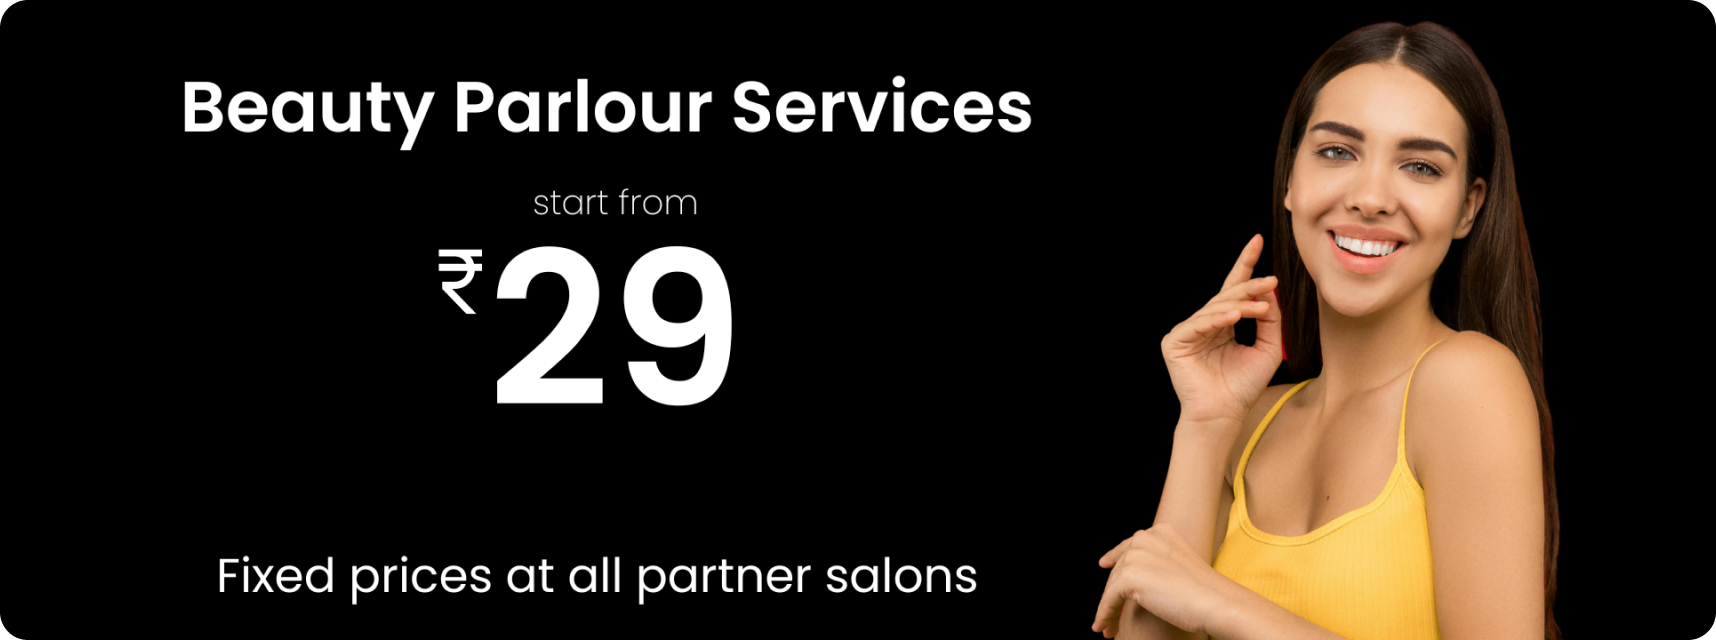 Beauty Parlour services